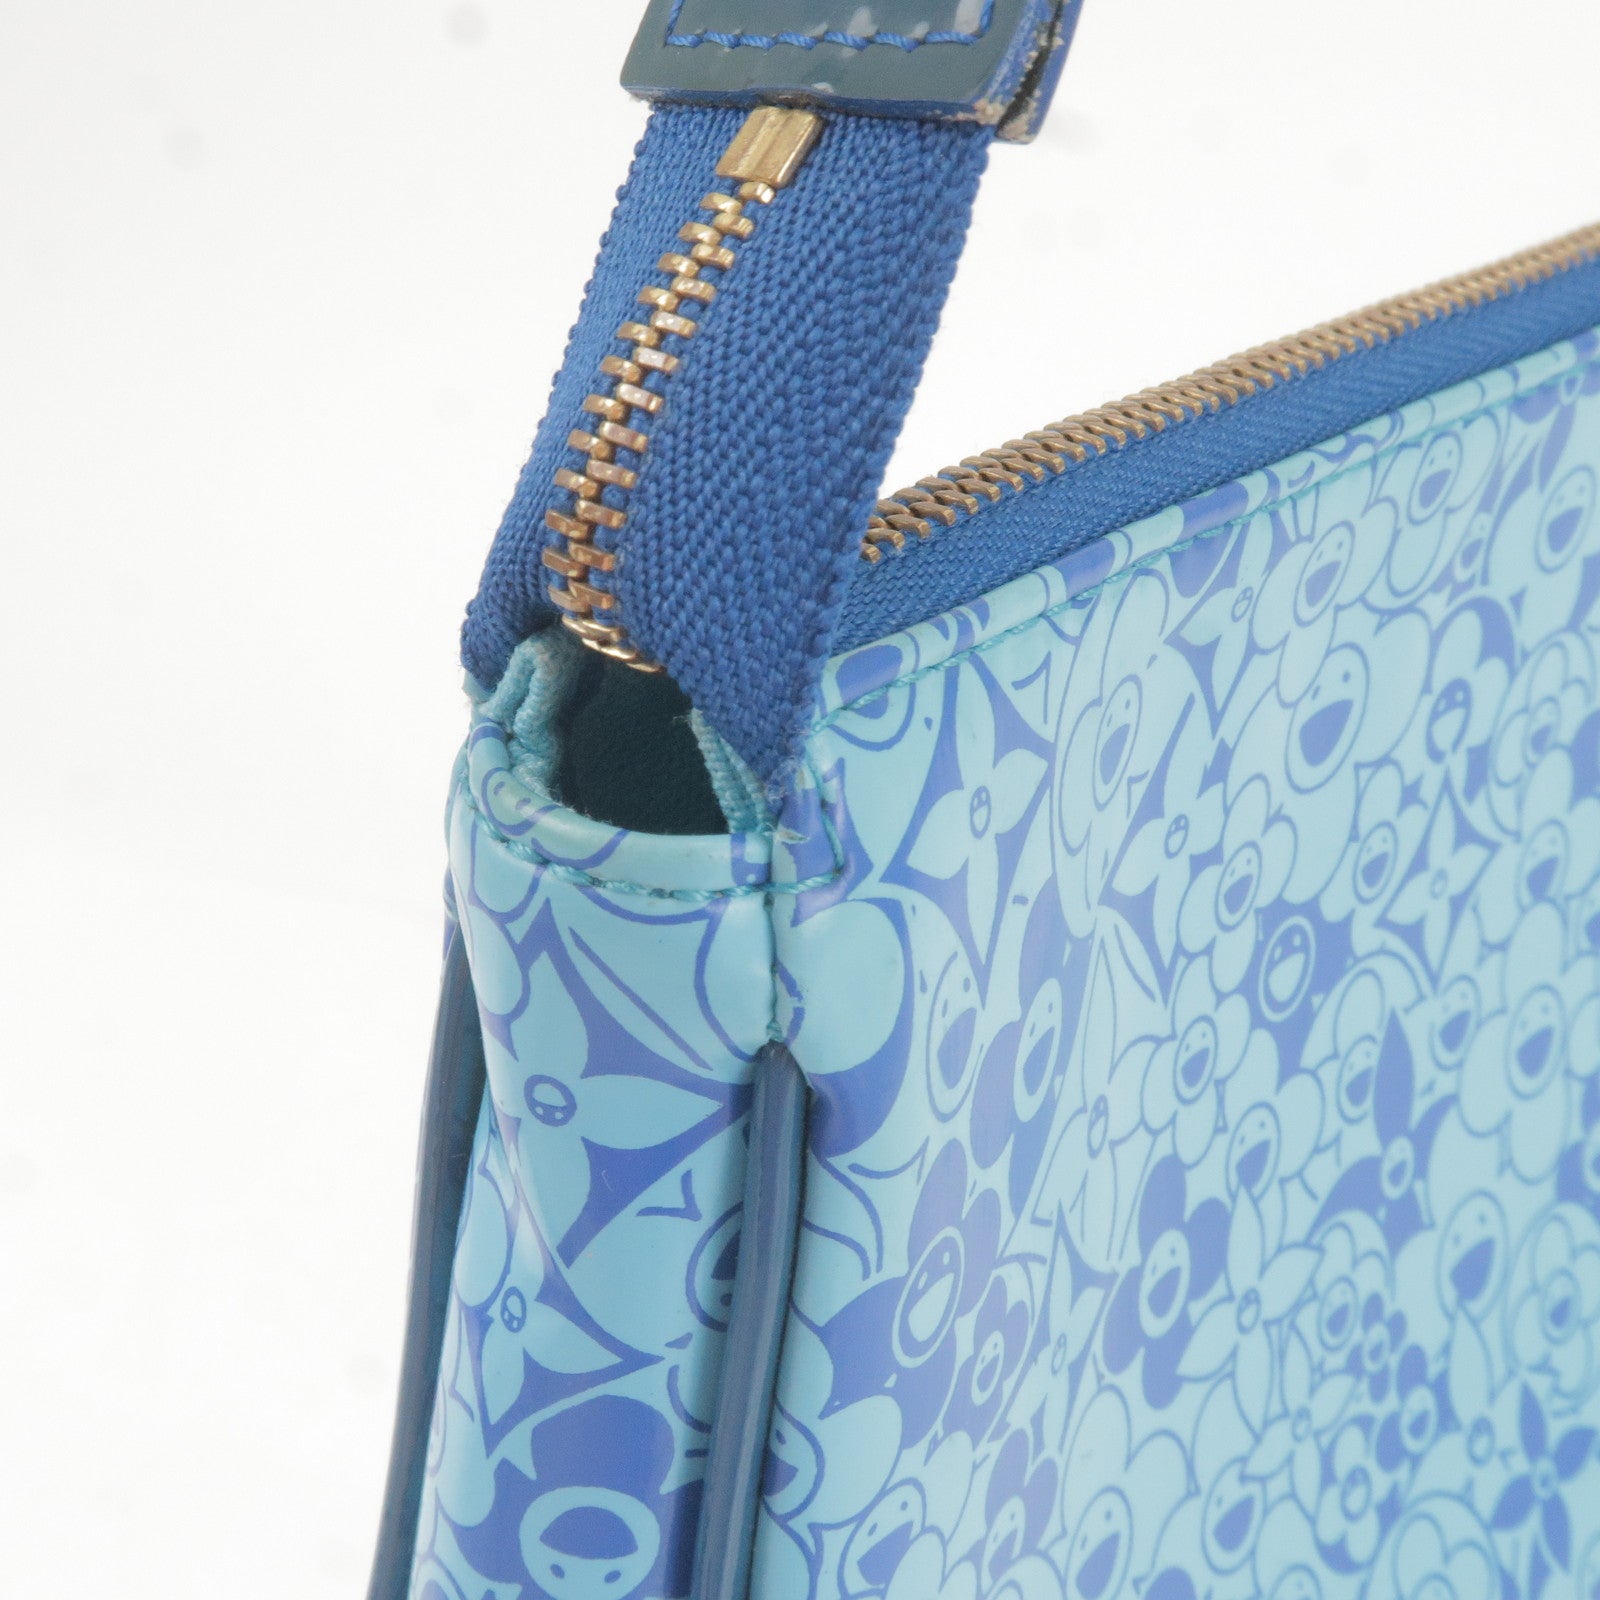 Louis-Vuitton-PVC-Enamel-Cosmic-Blossom-Pochette-Blue-M93167 – dct